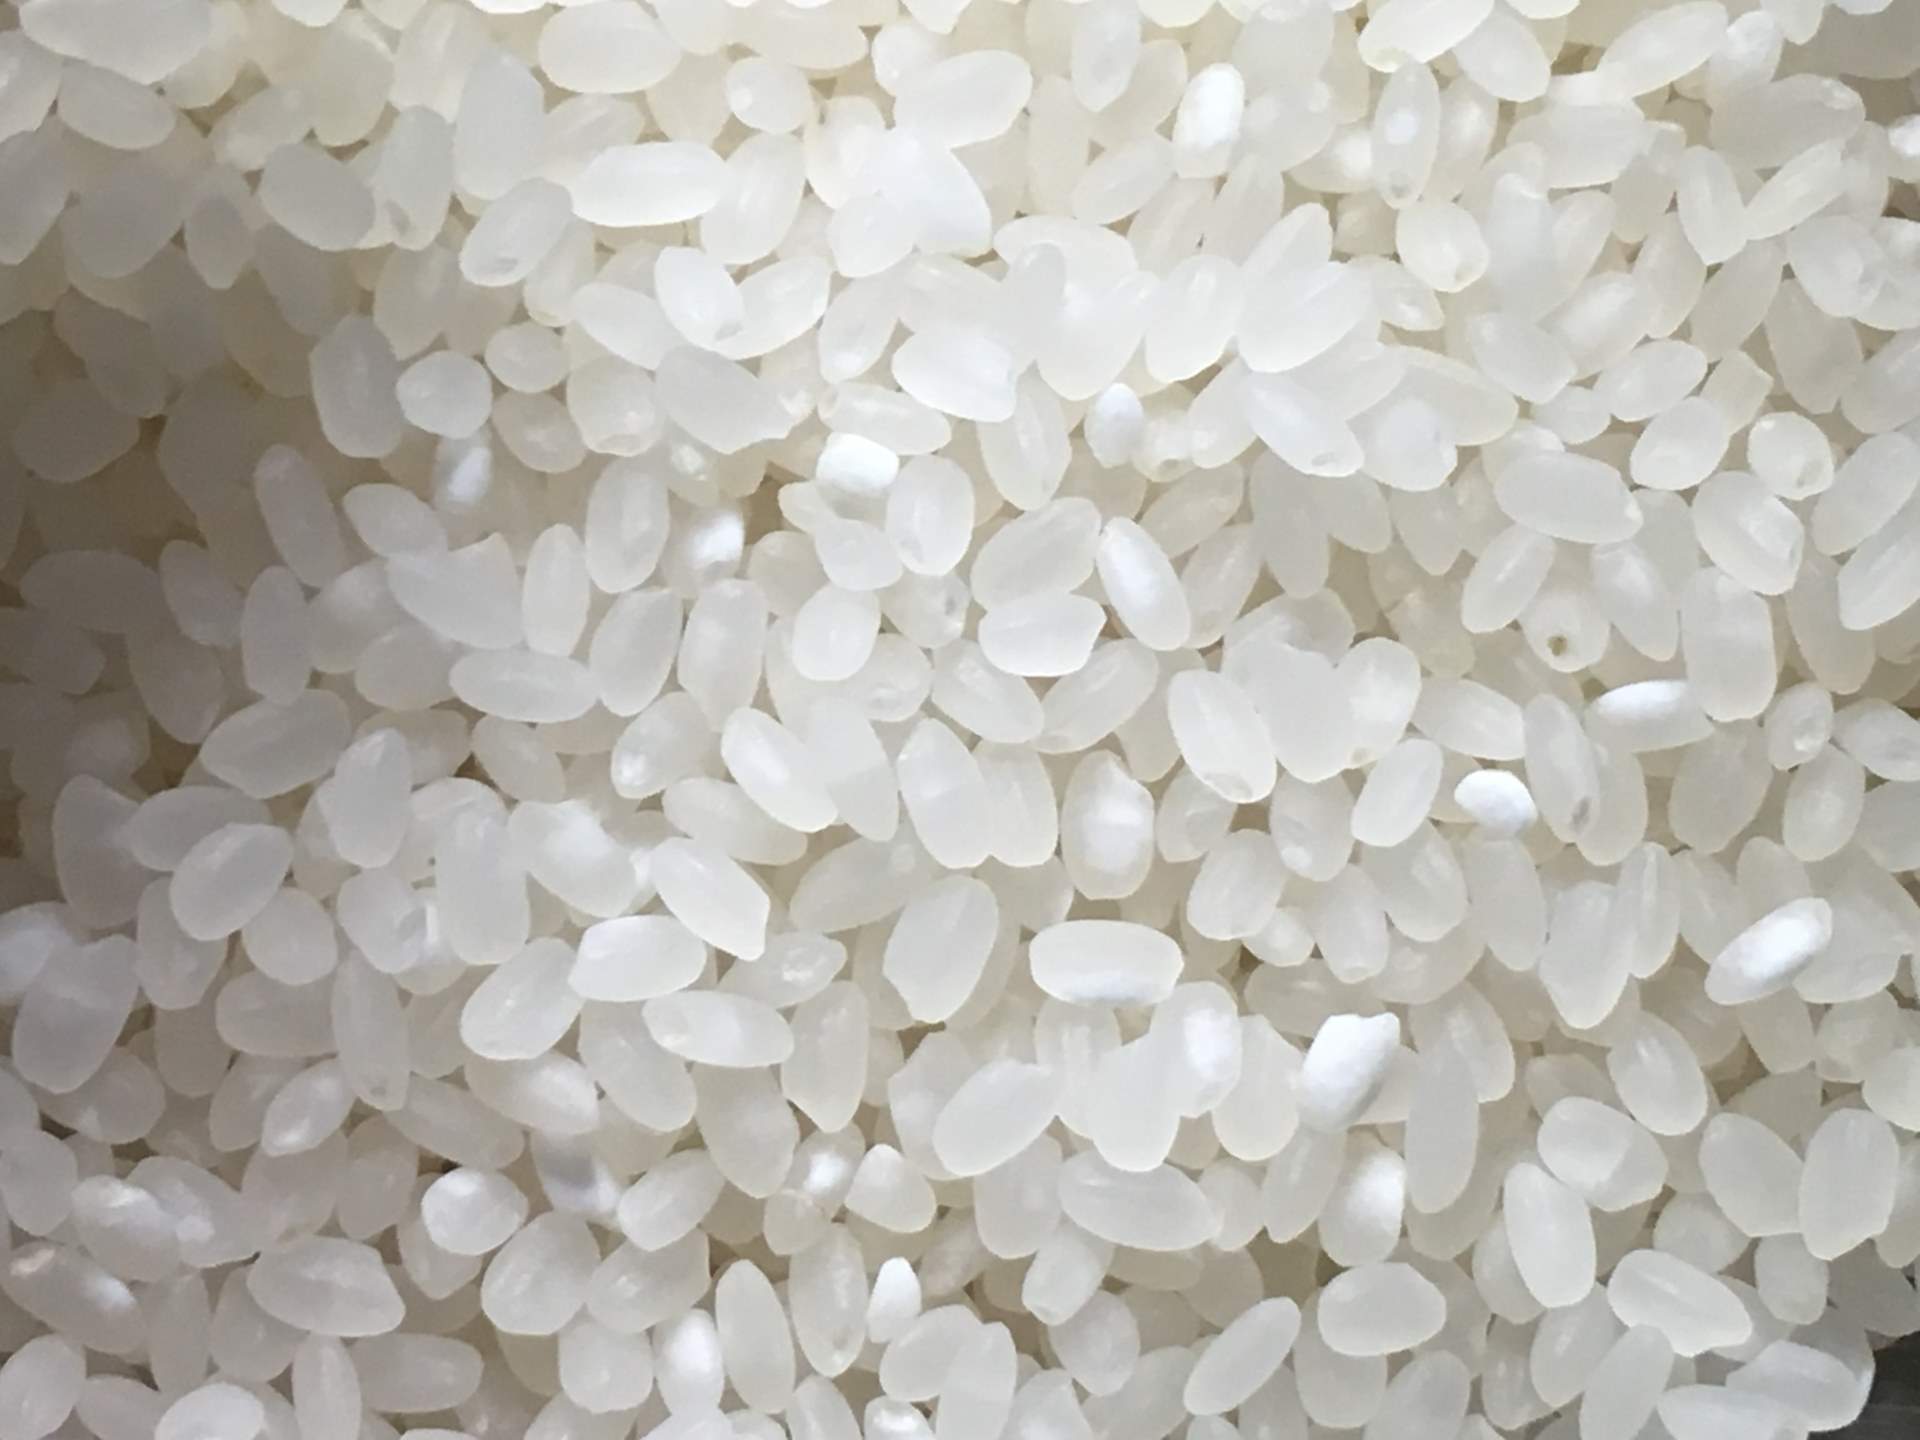 炊く前の米粒:平成30年度 北海道産 ななつぼし